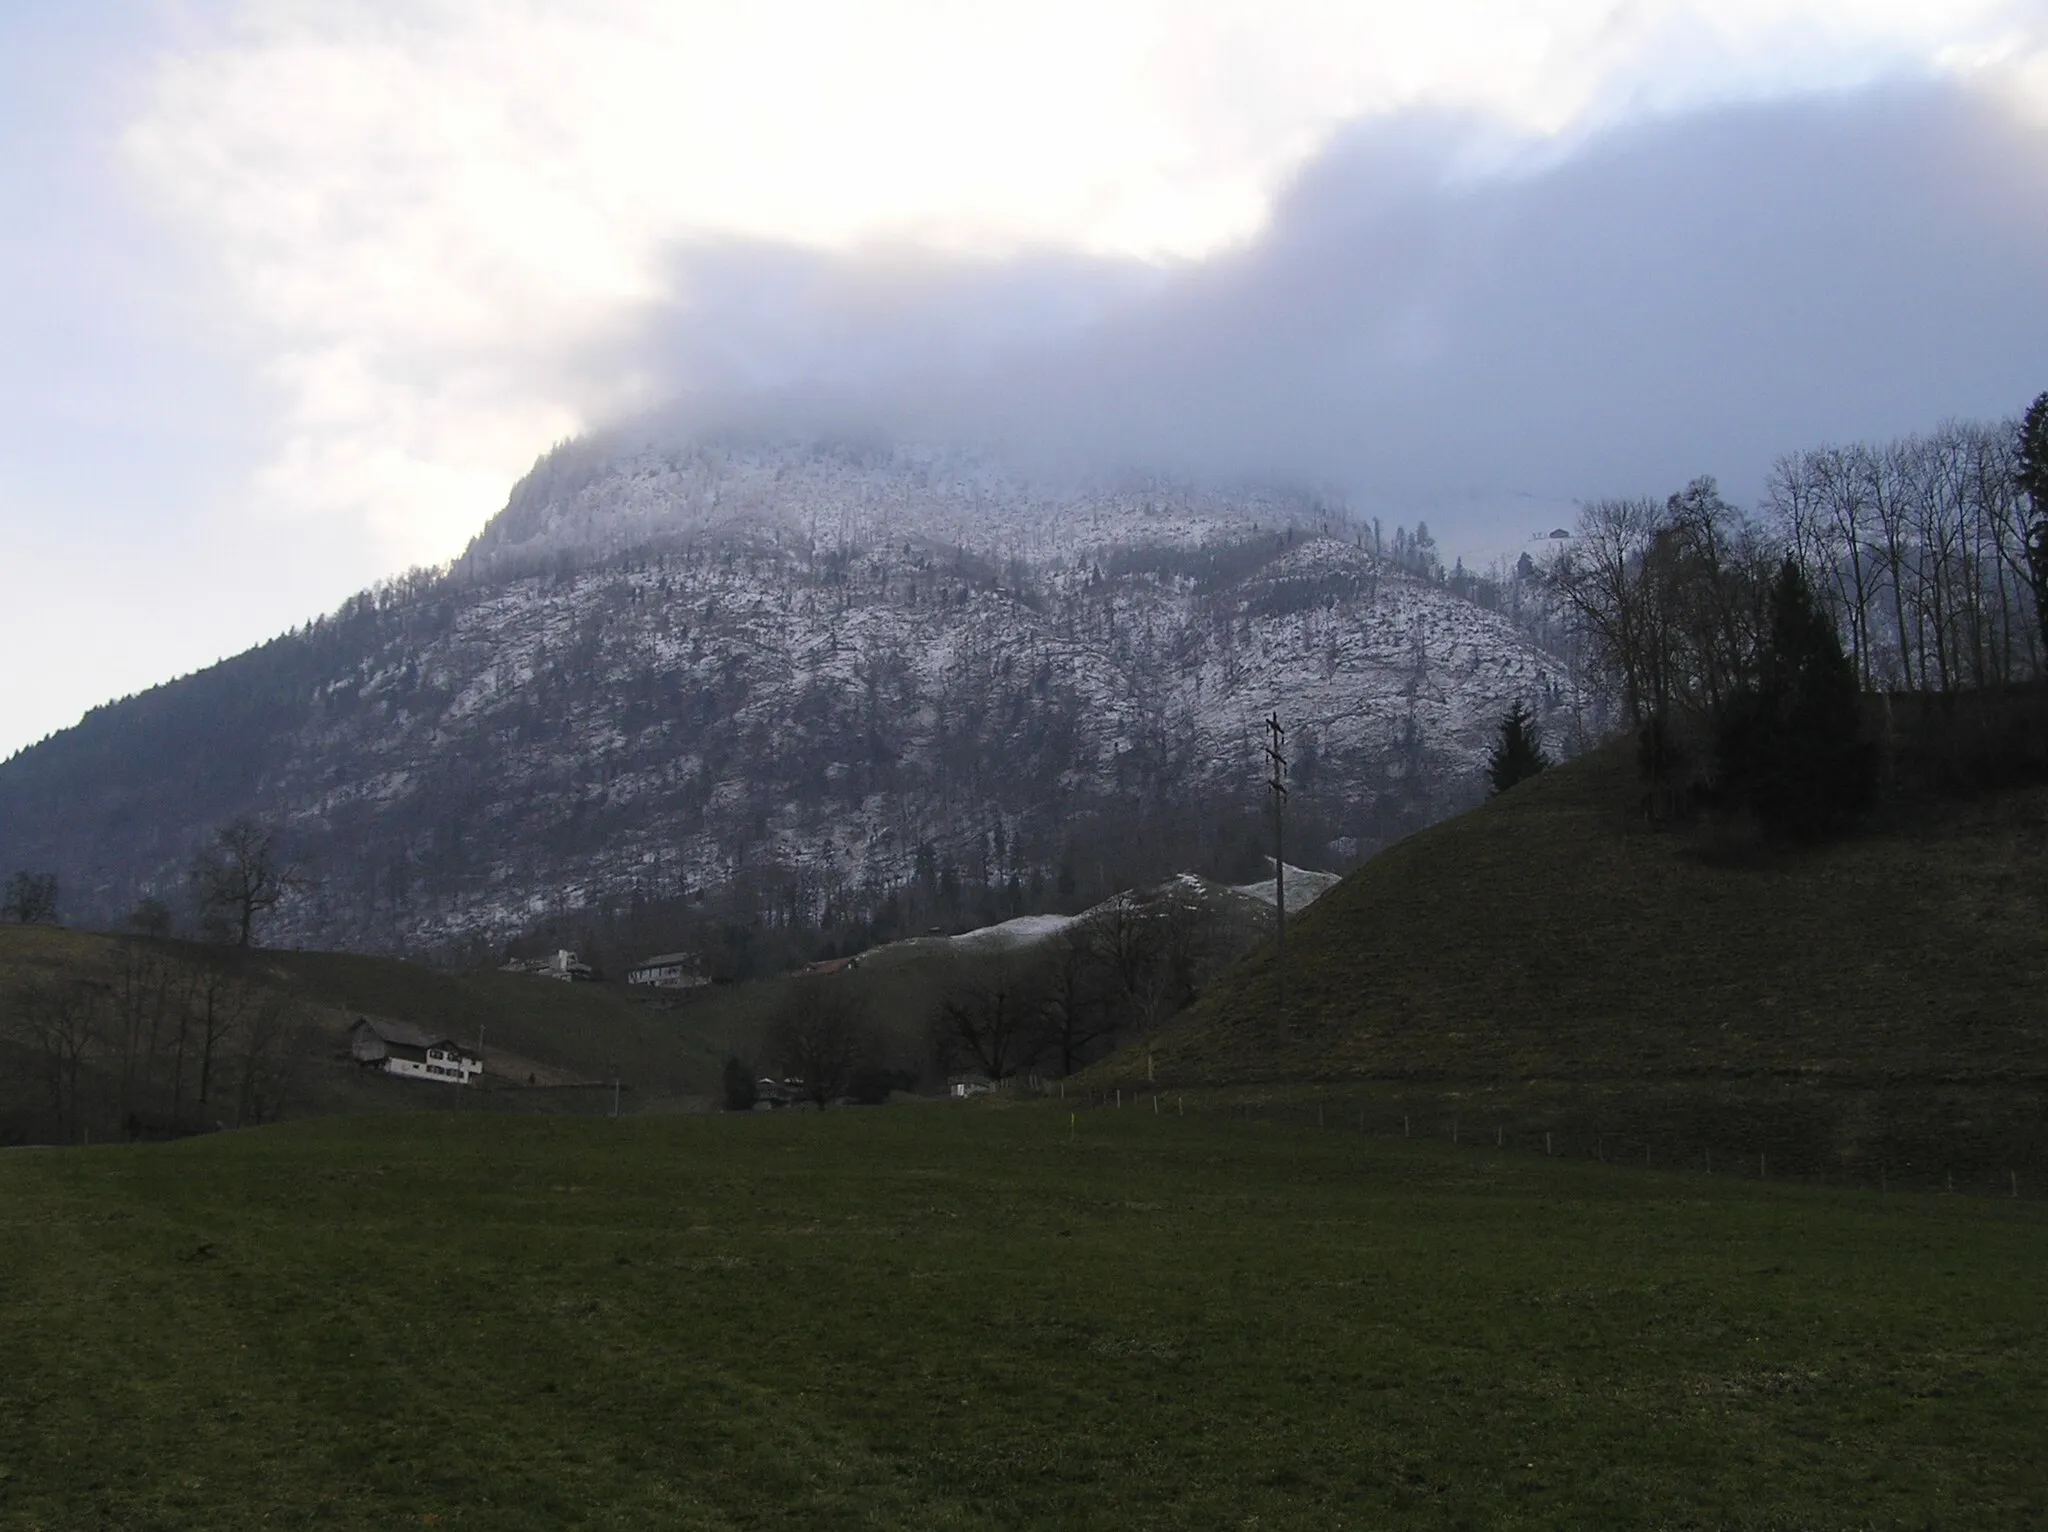 Image de Suisse centrale